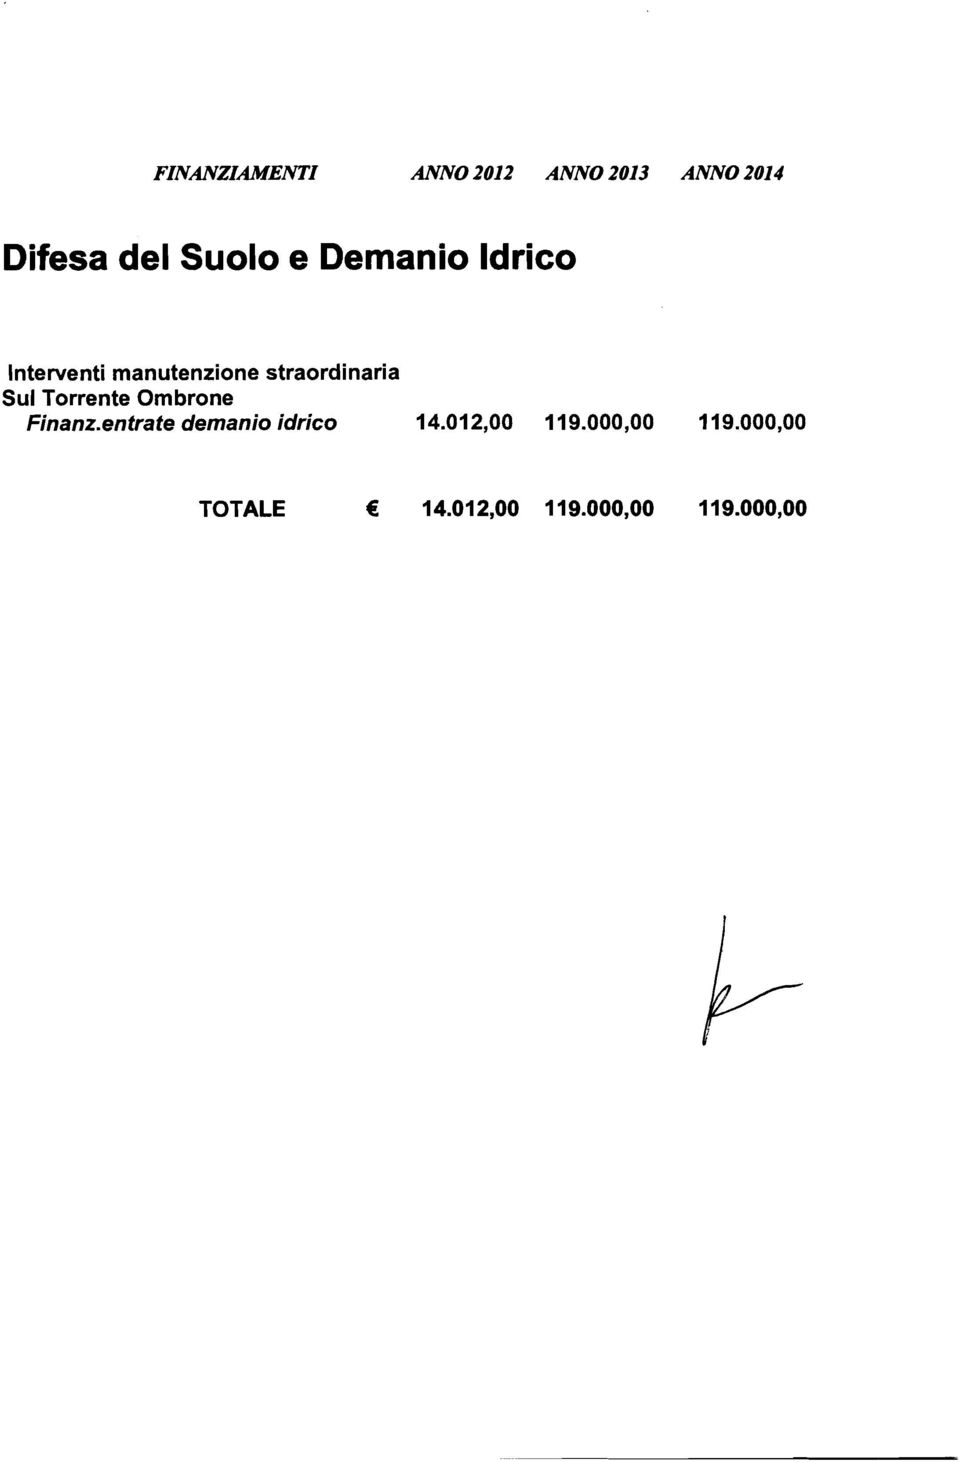 Torrente Ombrone Finanzentrate demanio idrico 14.012,OO 119.